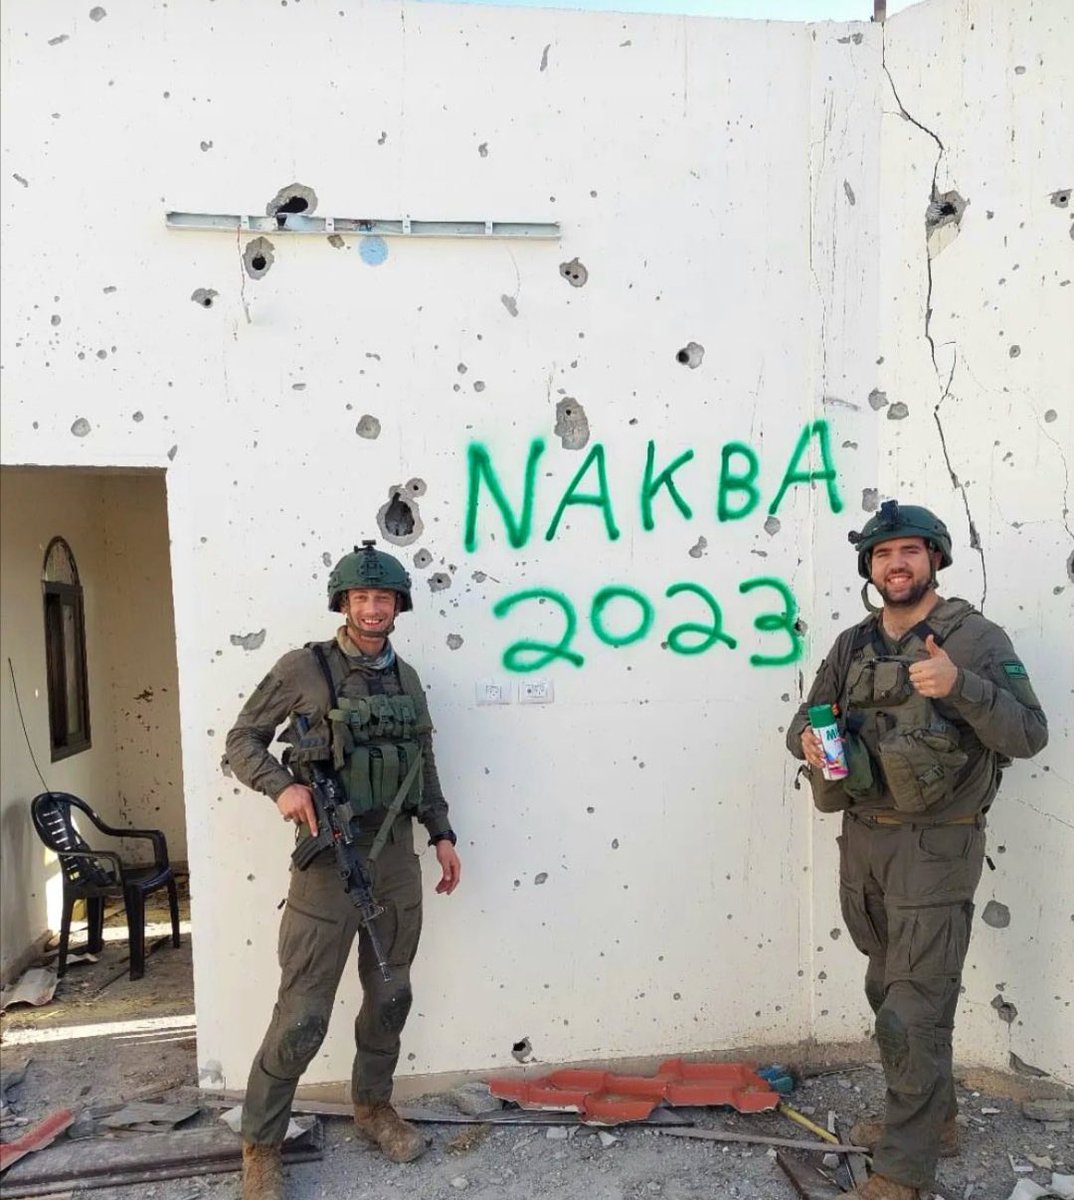 Ein israelischer Soldat hat dieses Bild auf seinem Social-Media-Konto veröffentlicht und damit geprahlt, an einer zweiten palästinensischen Nakba beteiligt zu sein. Während Palästinenser eine erneute Nakba fürchten, feiern israelische Soldaten ihre Teilnahme an einer Nakba.